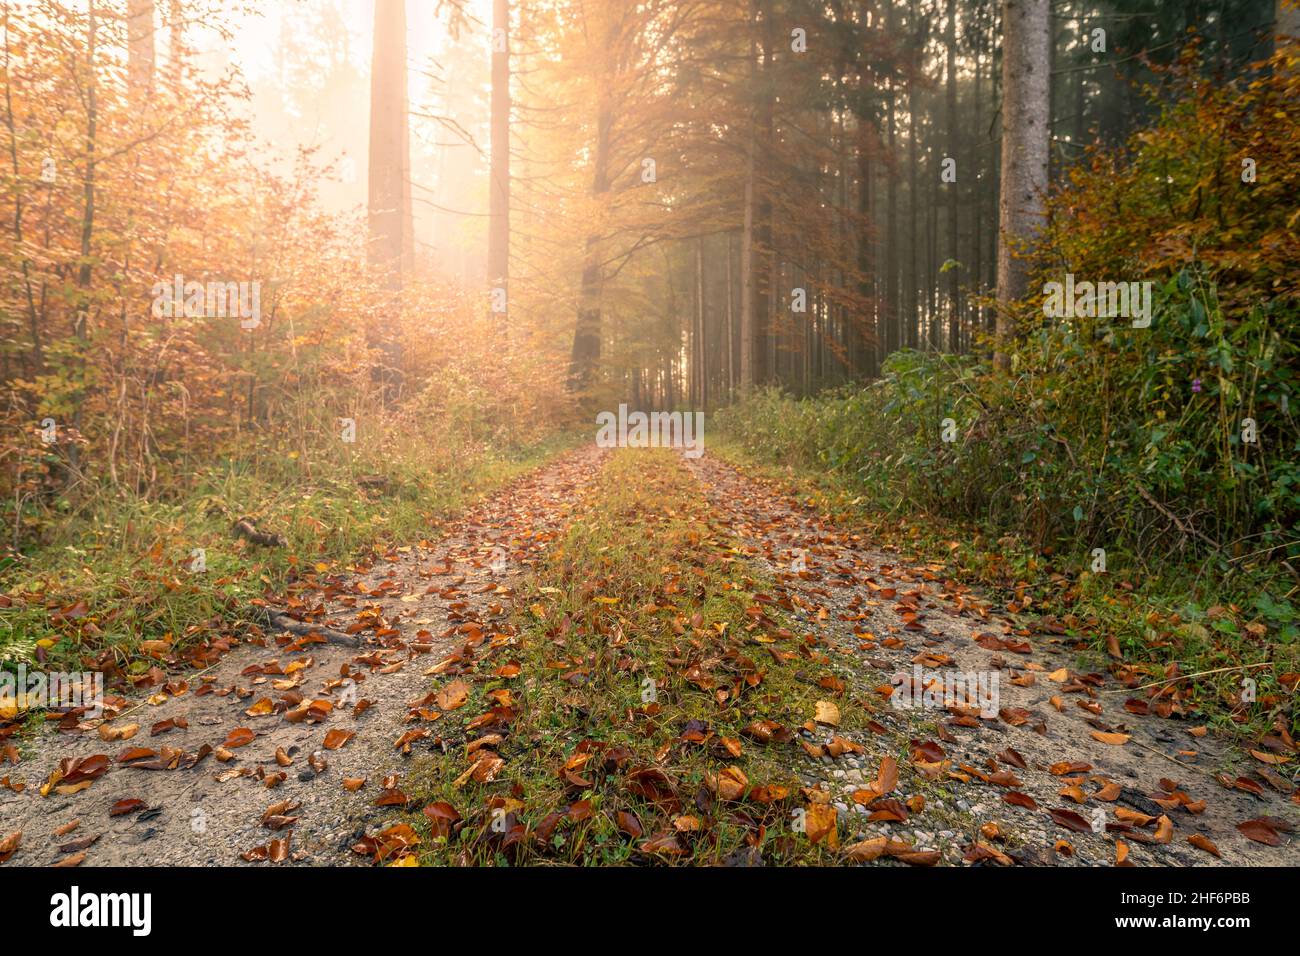 La lumière du soleil se diffuse dans une forêt de couleur automnale avec une route rurale idyllique Banque D'Images